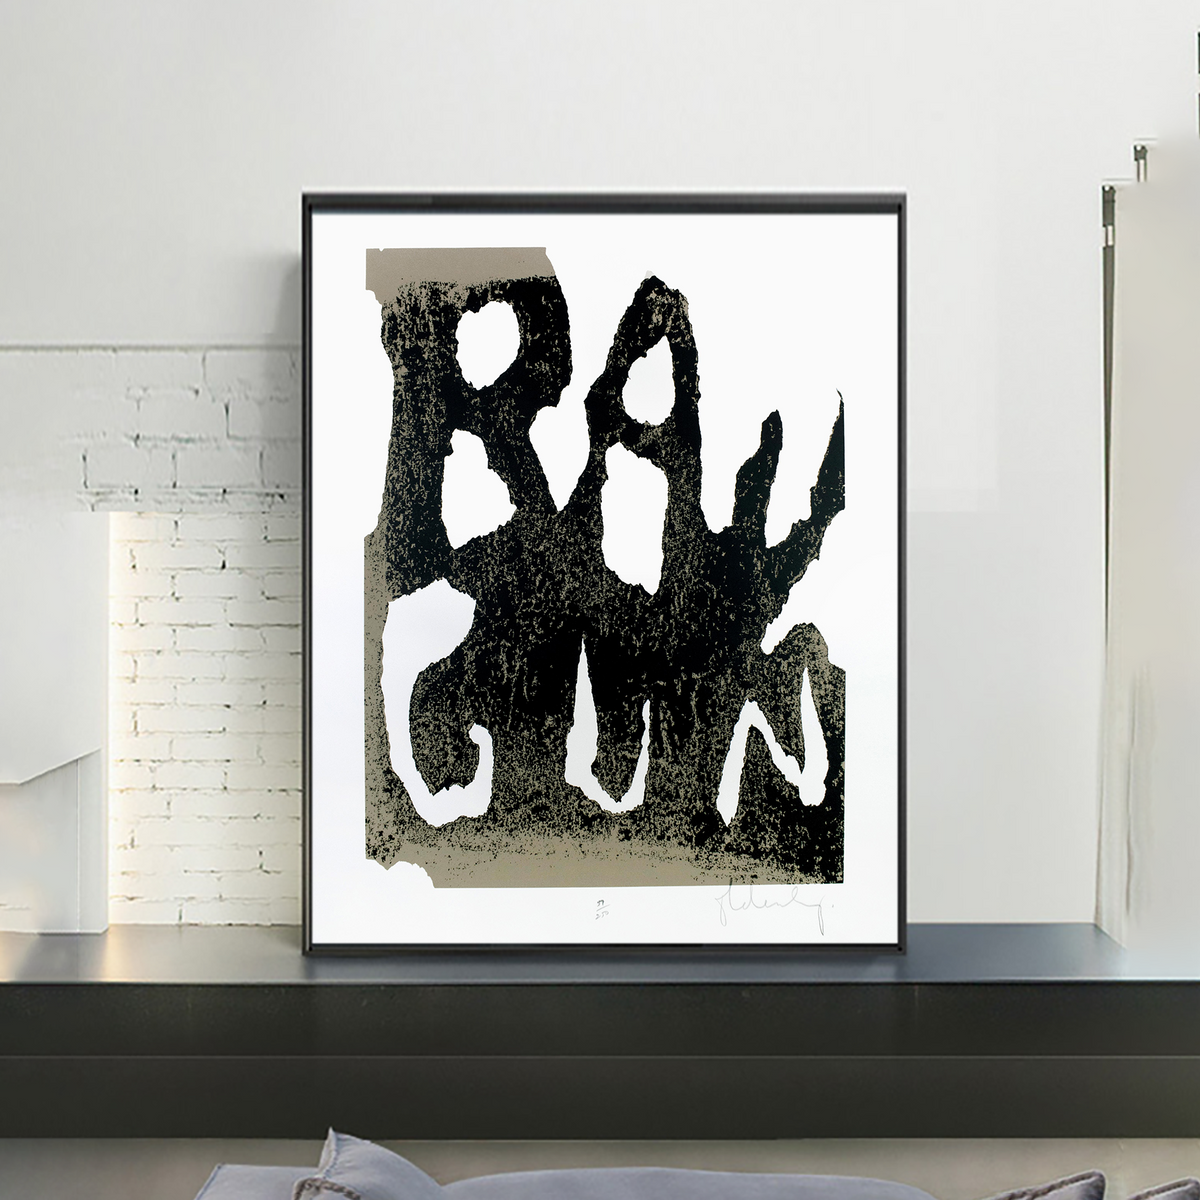 Ray Gun by Claes Oldenburg